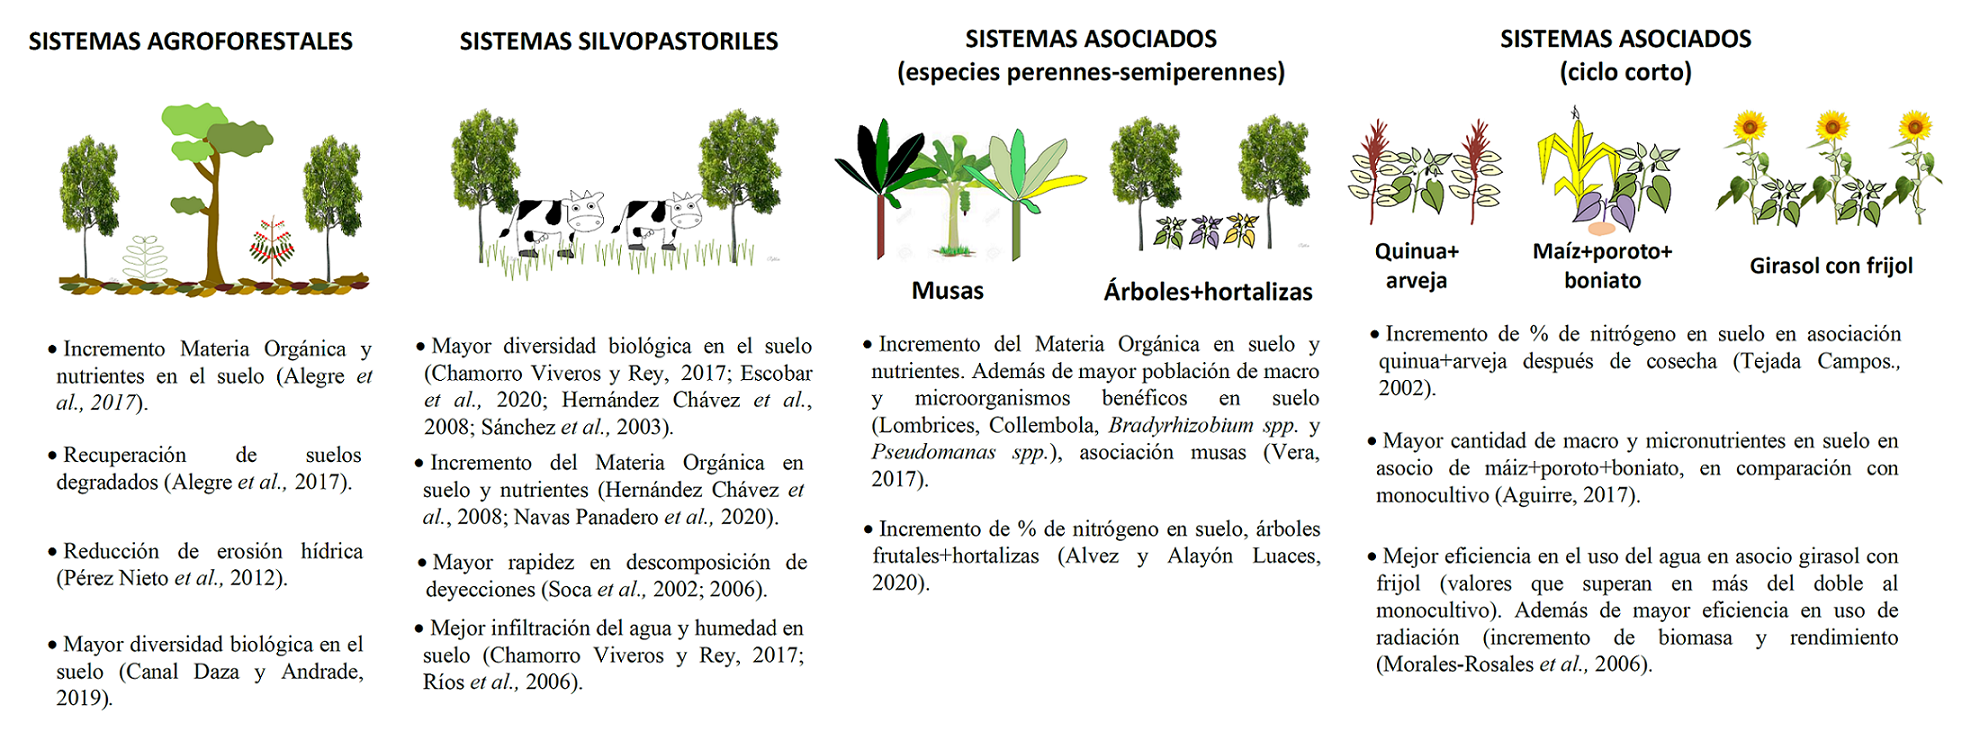 Ventajas de sistemas asociados en relación con las propiedades del suelo y el uso de recursos naturales.